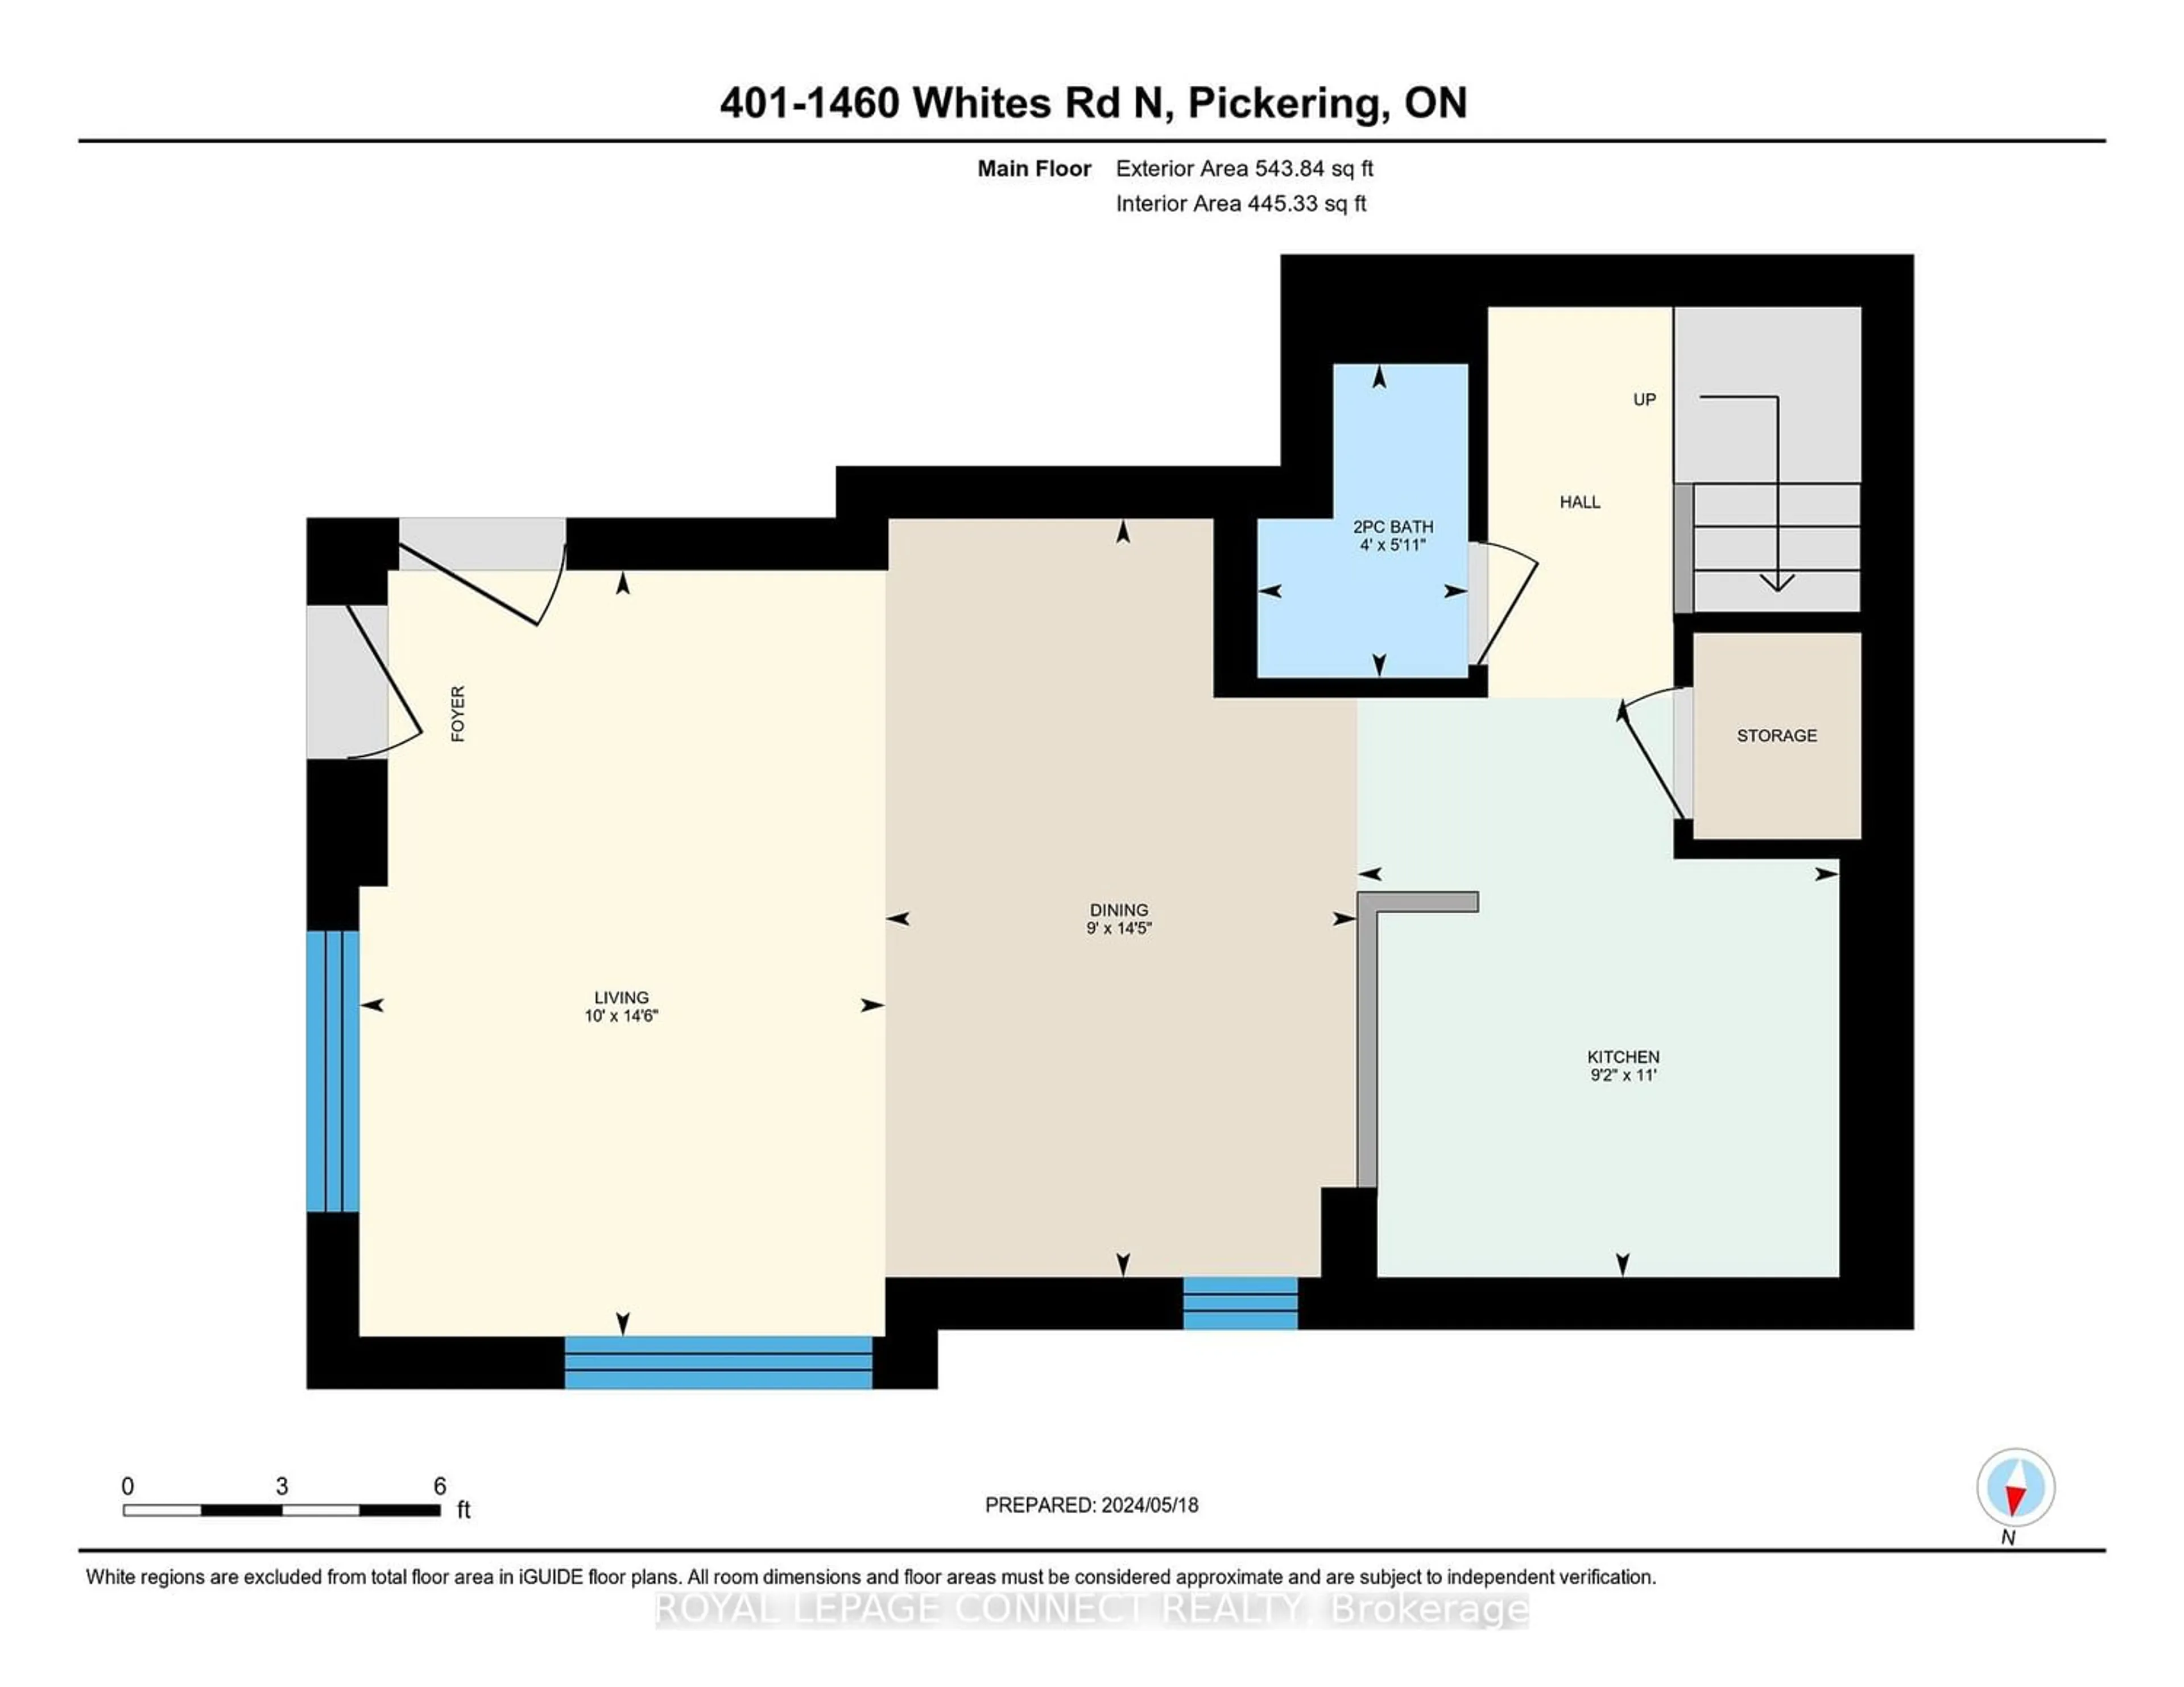 Floor plan for 1460 Whites Rd #401, Pickering Ontario L1V 0E8